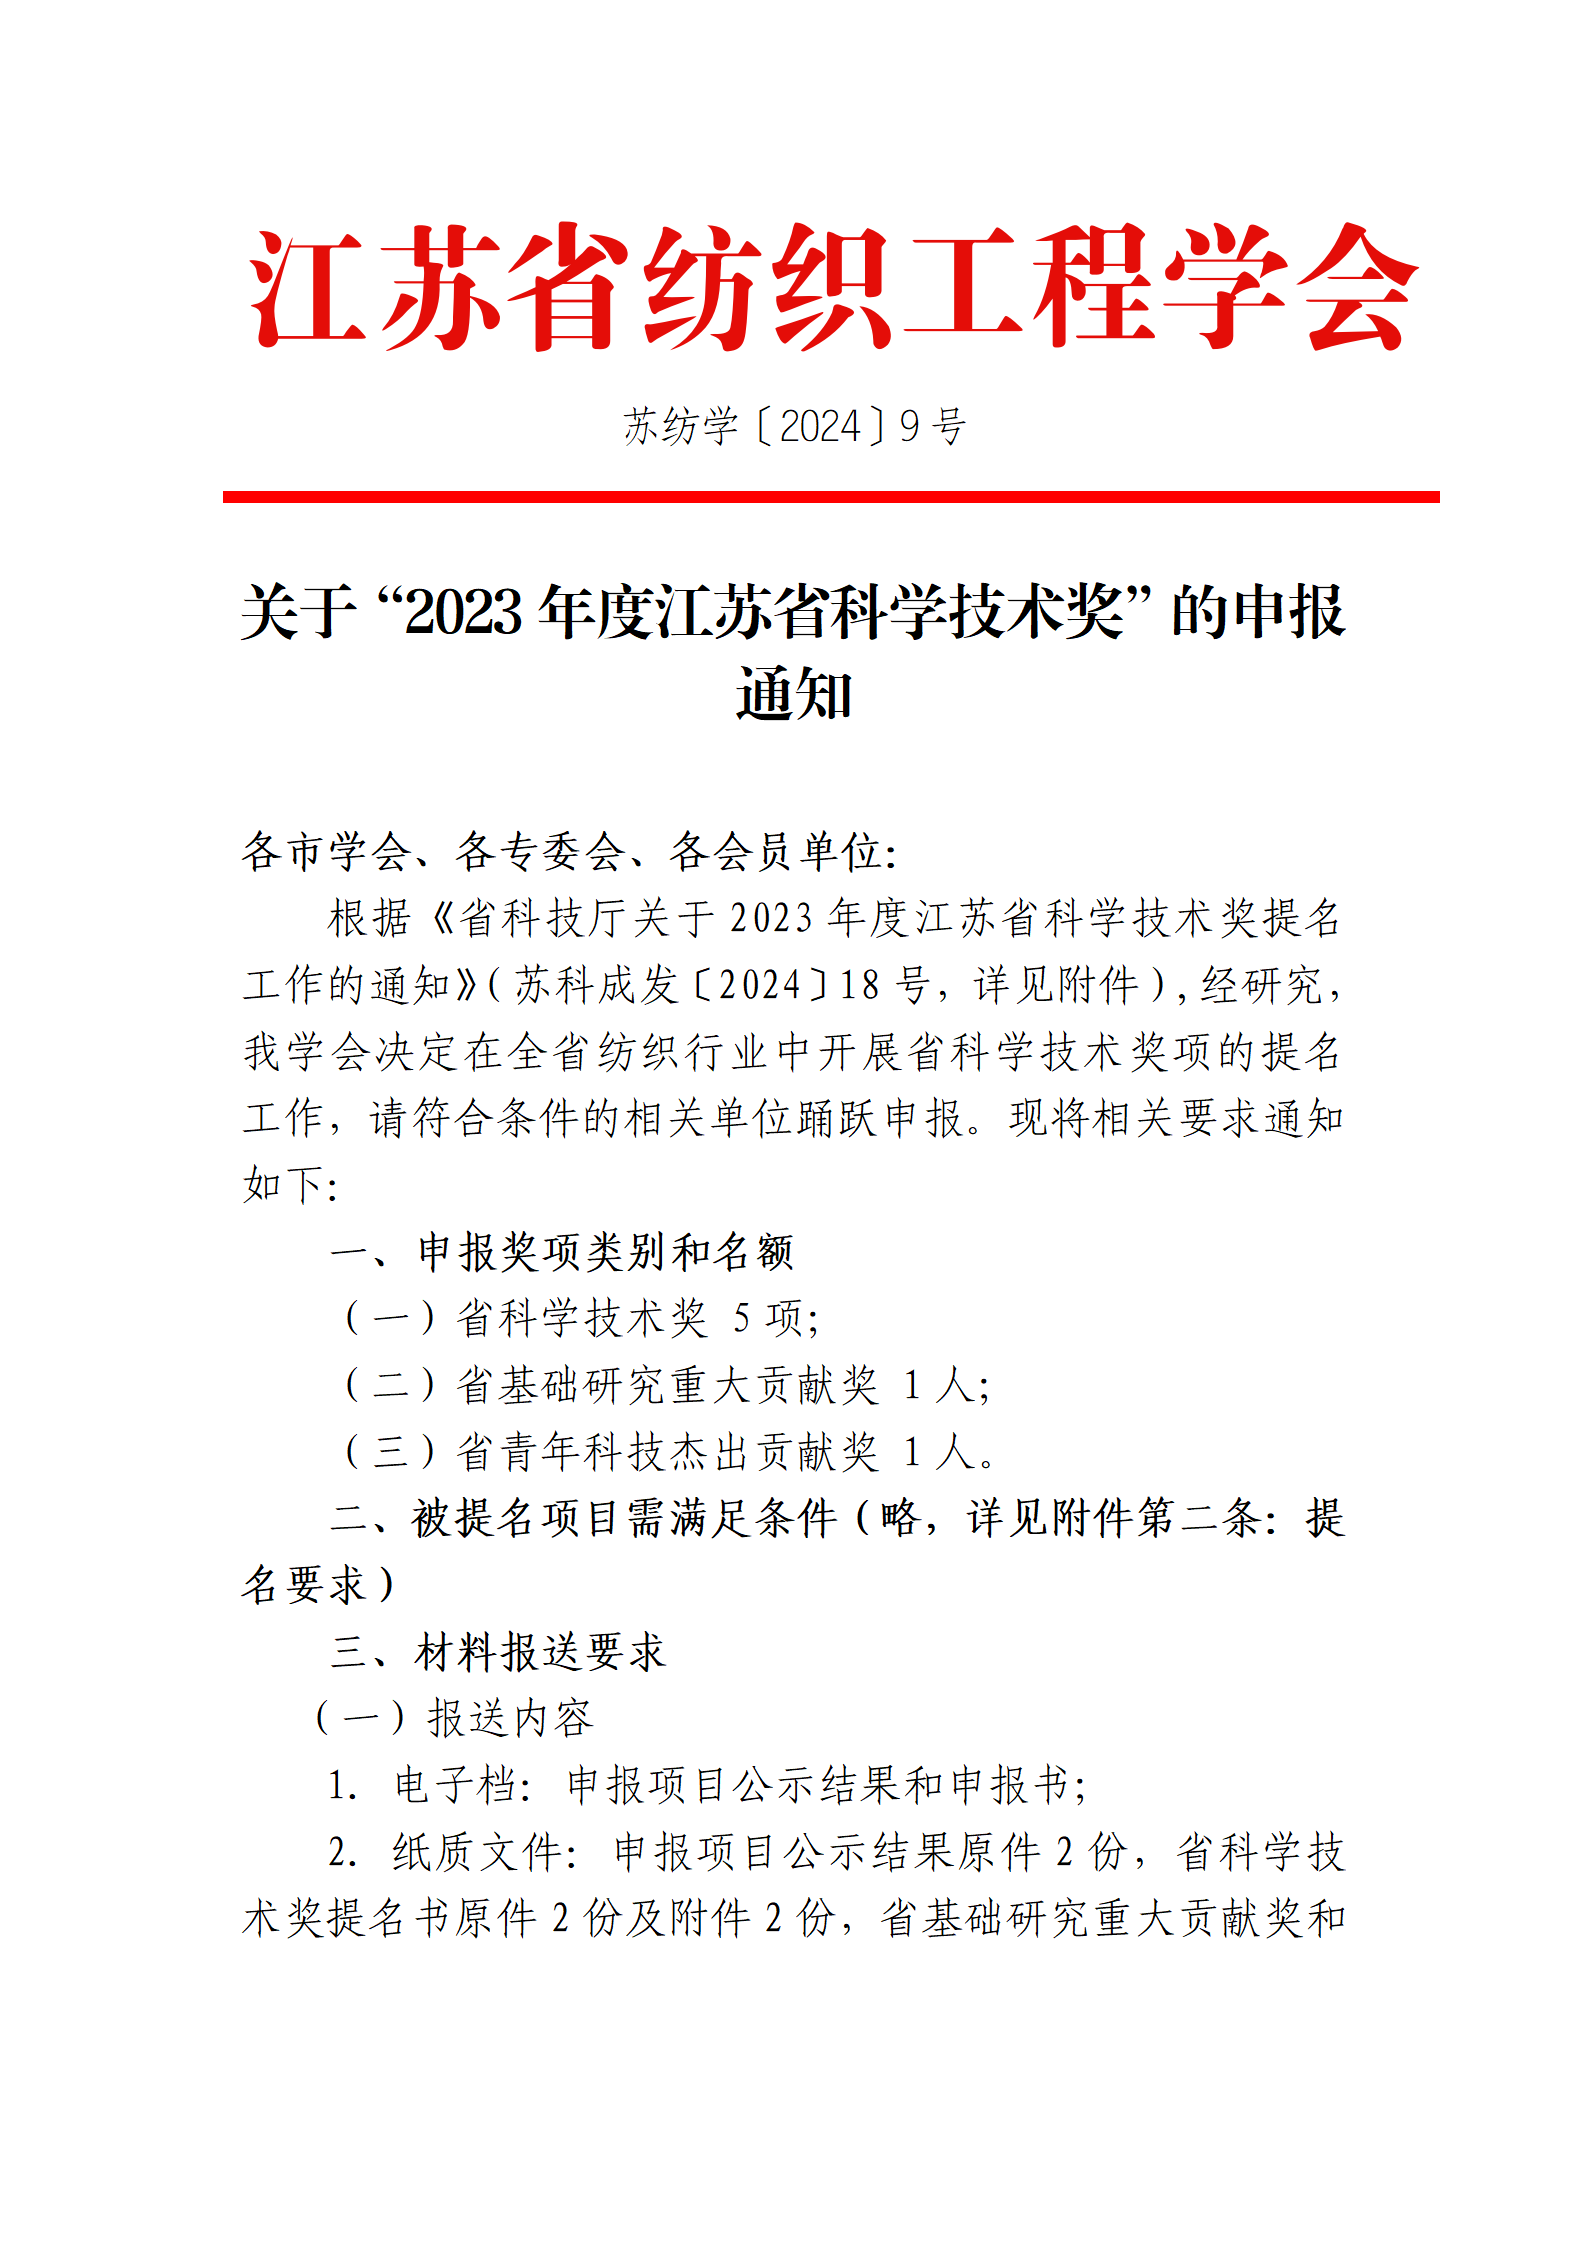 9号文：关于申报“2023年度江苏省科学技术奖”的通知（带章）_01.png